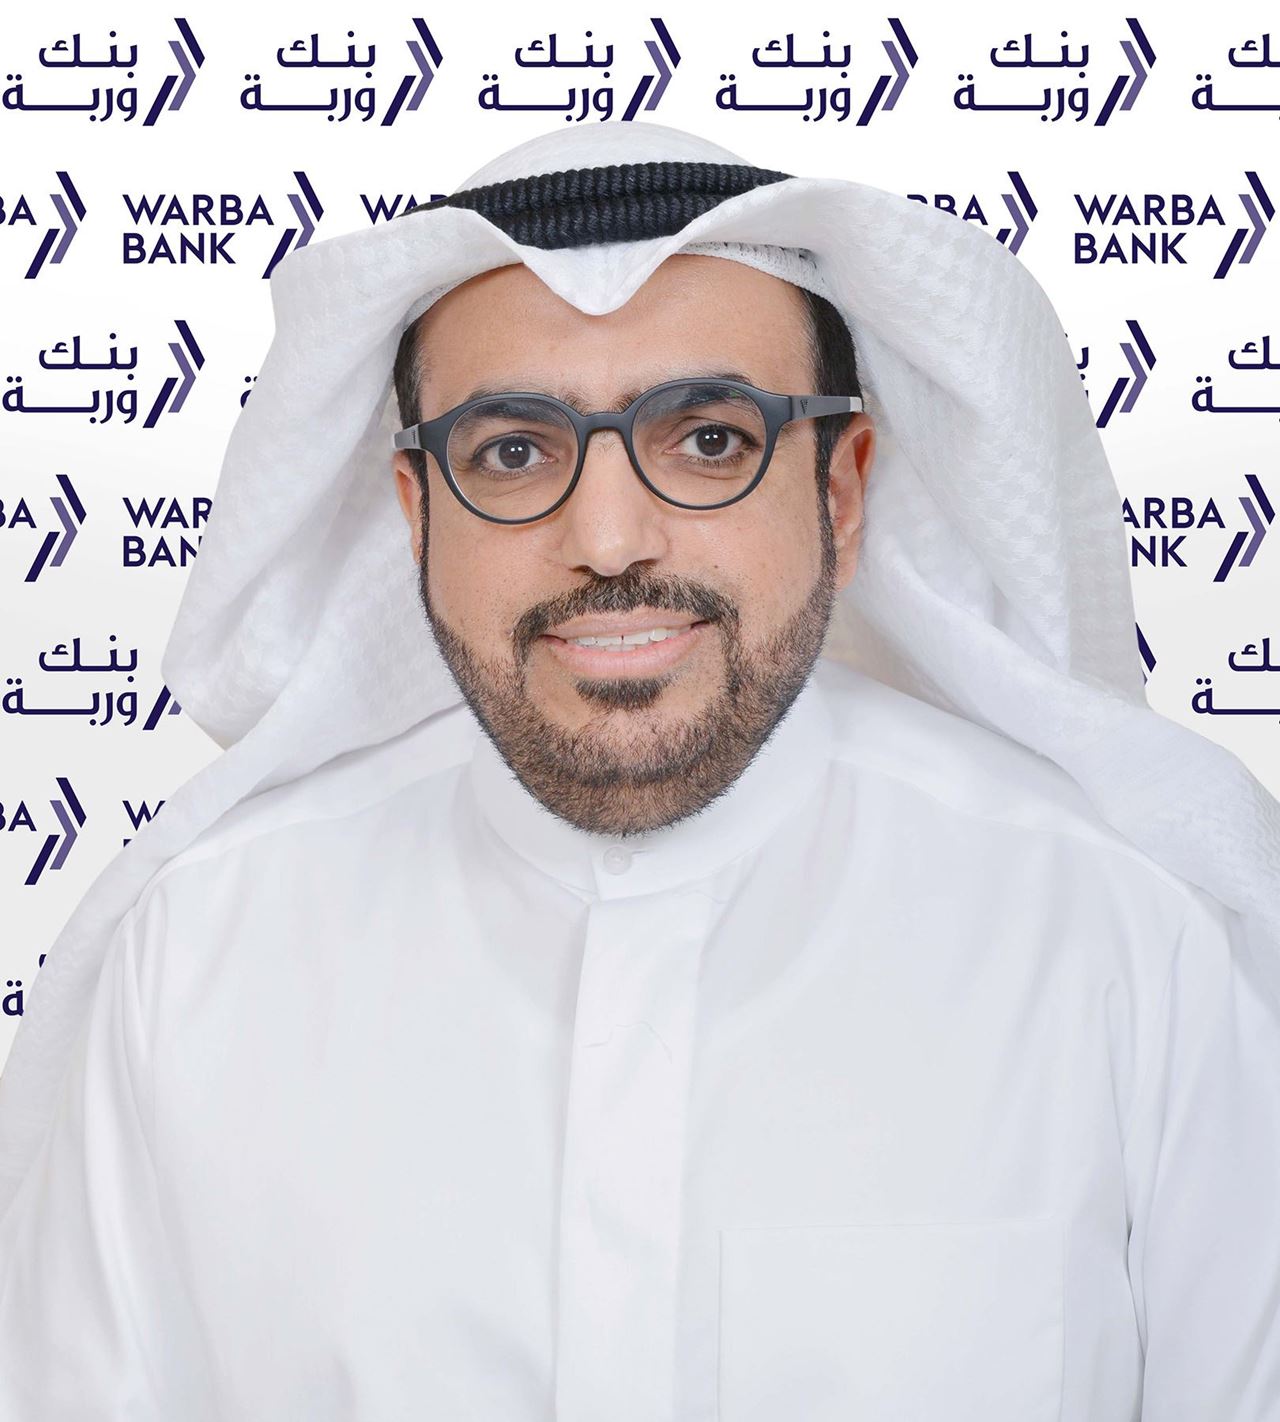 السيد/ شاهين حمد الغانم - الرئيس التنفيذي لبنك وربة